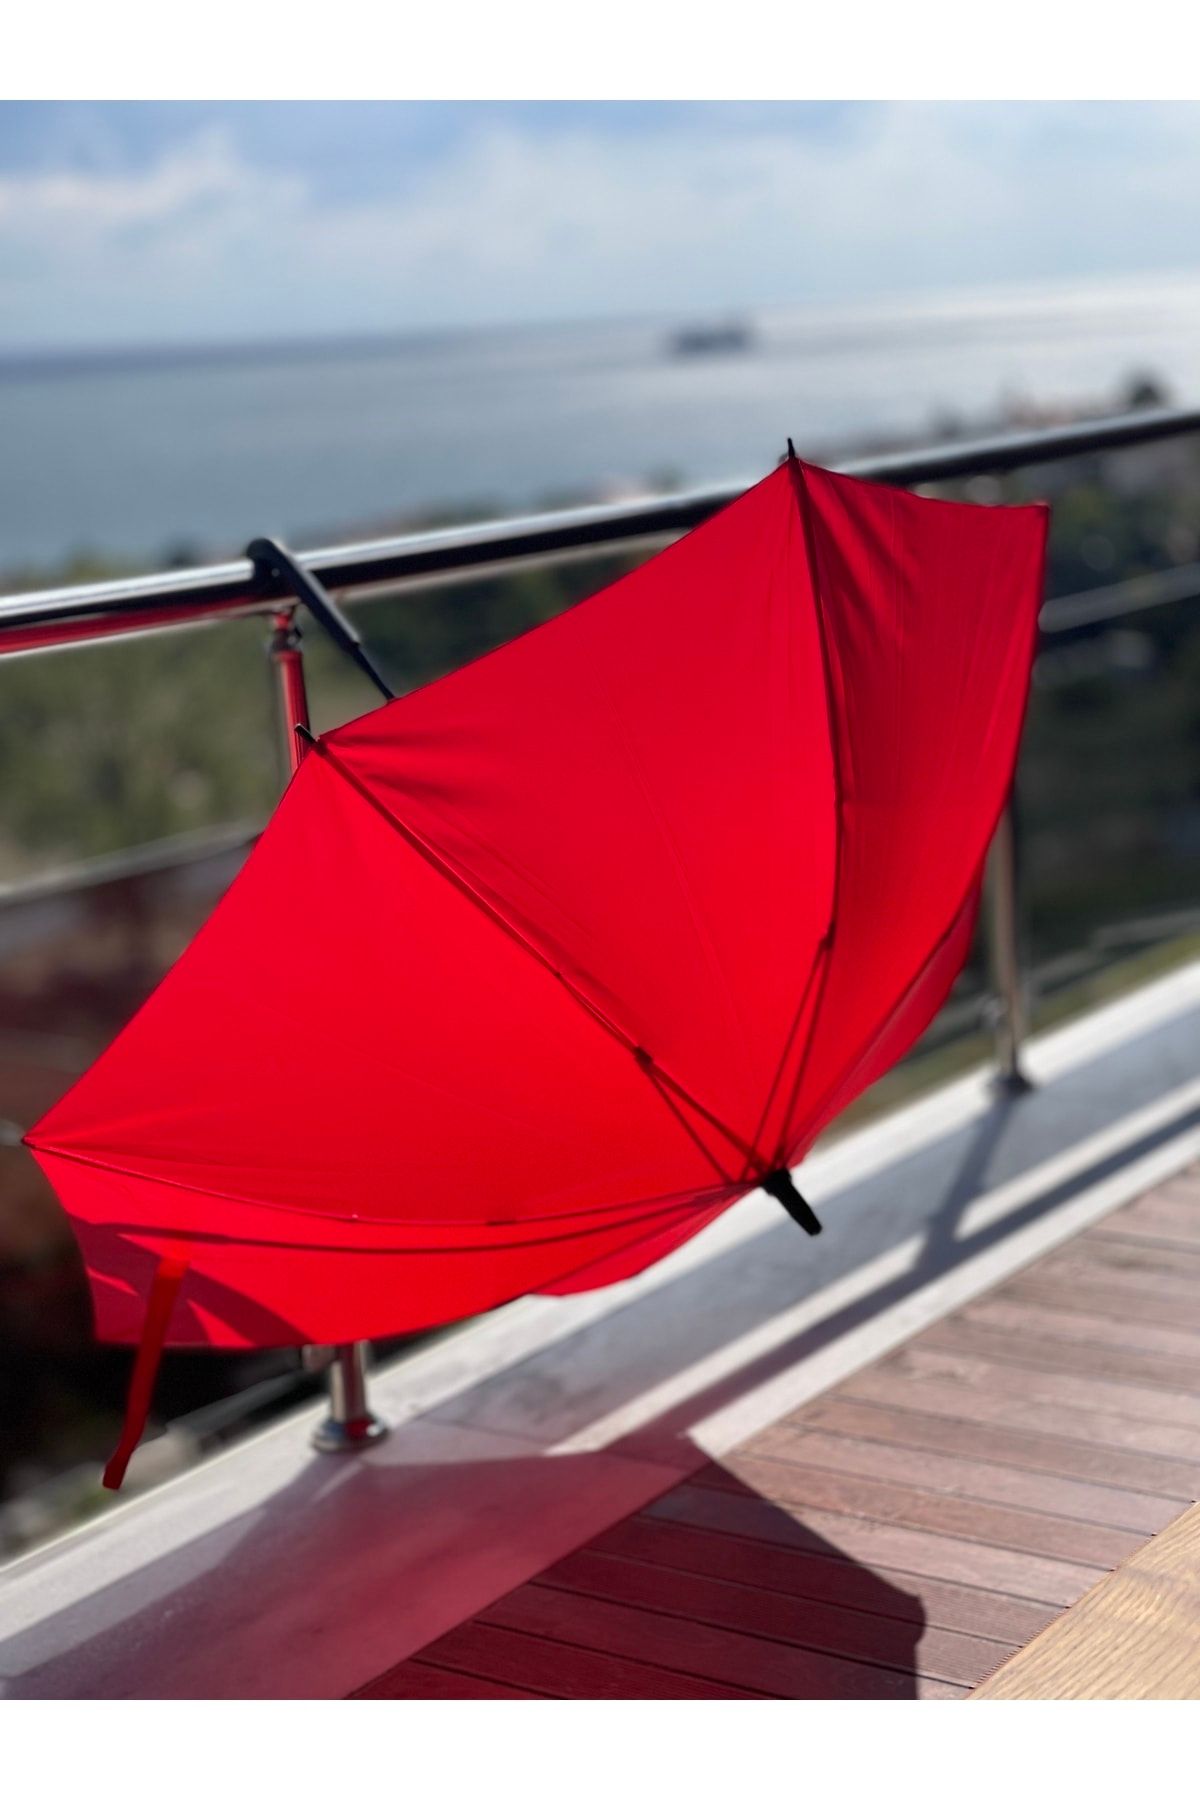 Sunlife 8 Telli Otomatik Fiberglass Baston Kırmızı Renkli Yağmur Şemsiyesi